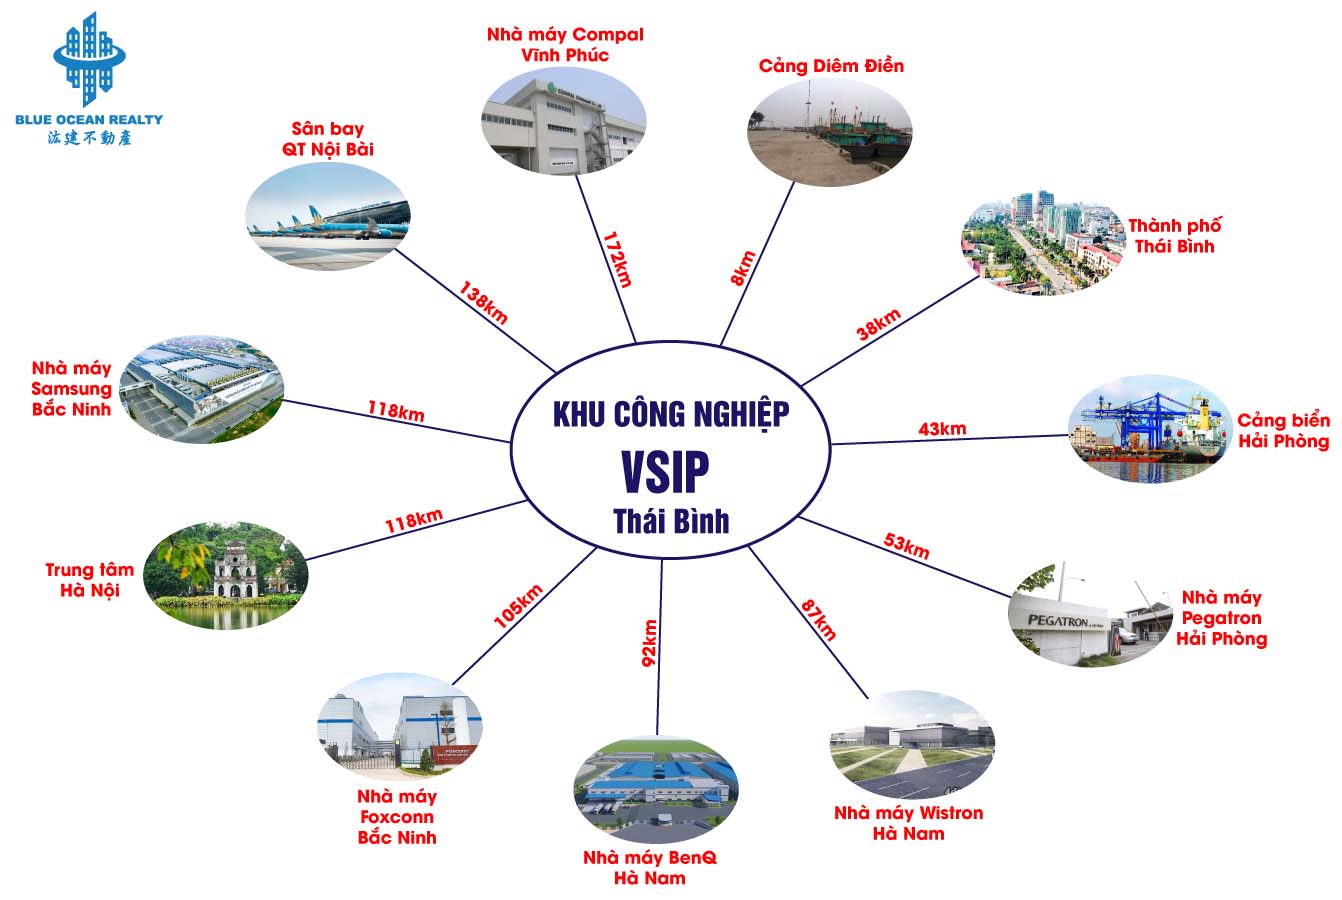 Khu công nghiệp (KCN) VSIP Thái Bình